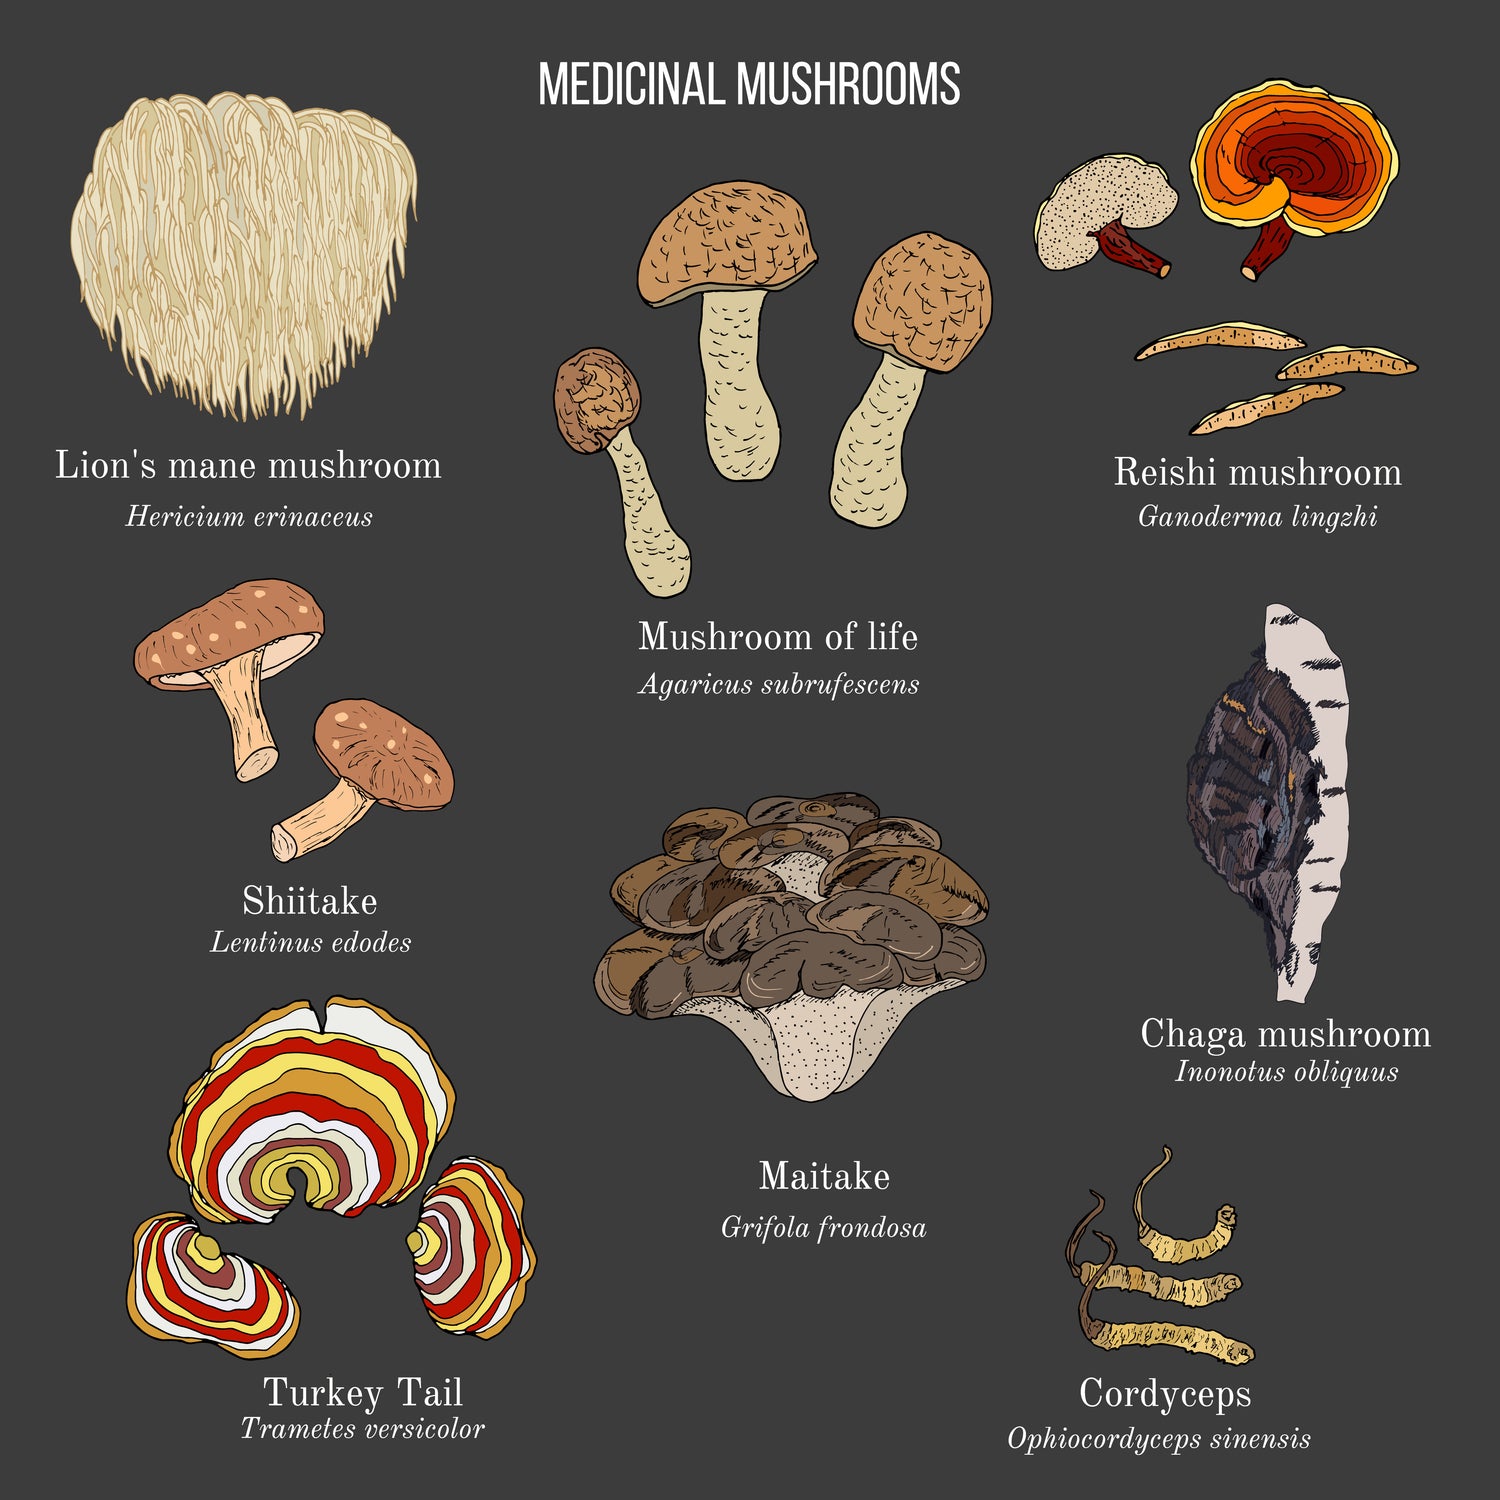 Why we use Medicinal Mushrooms